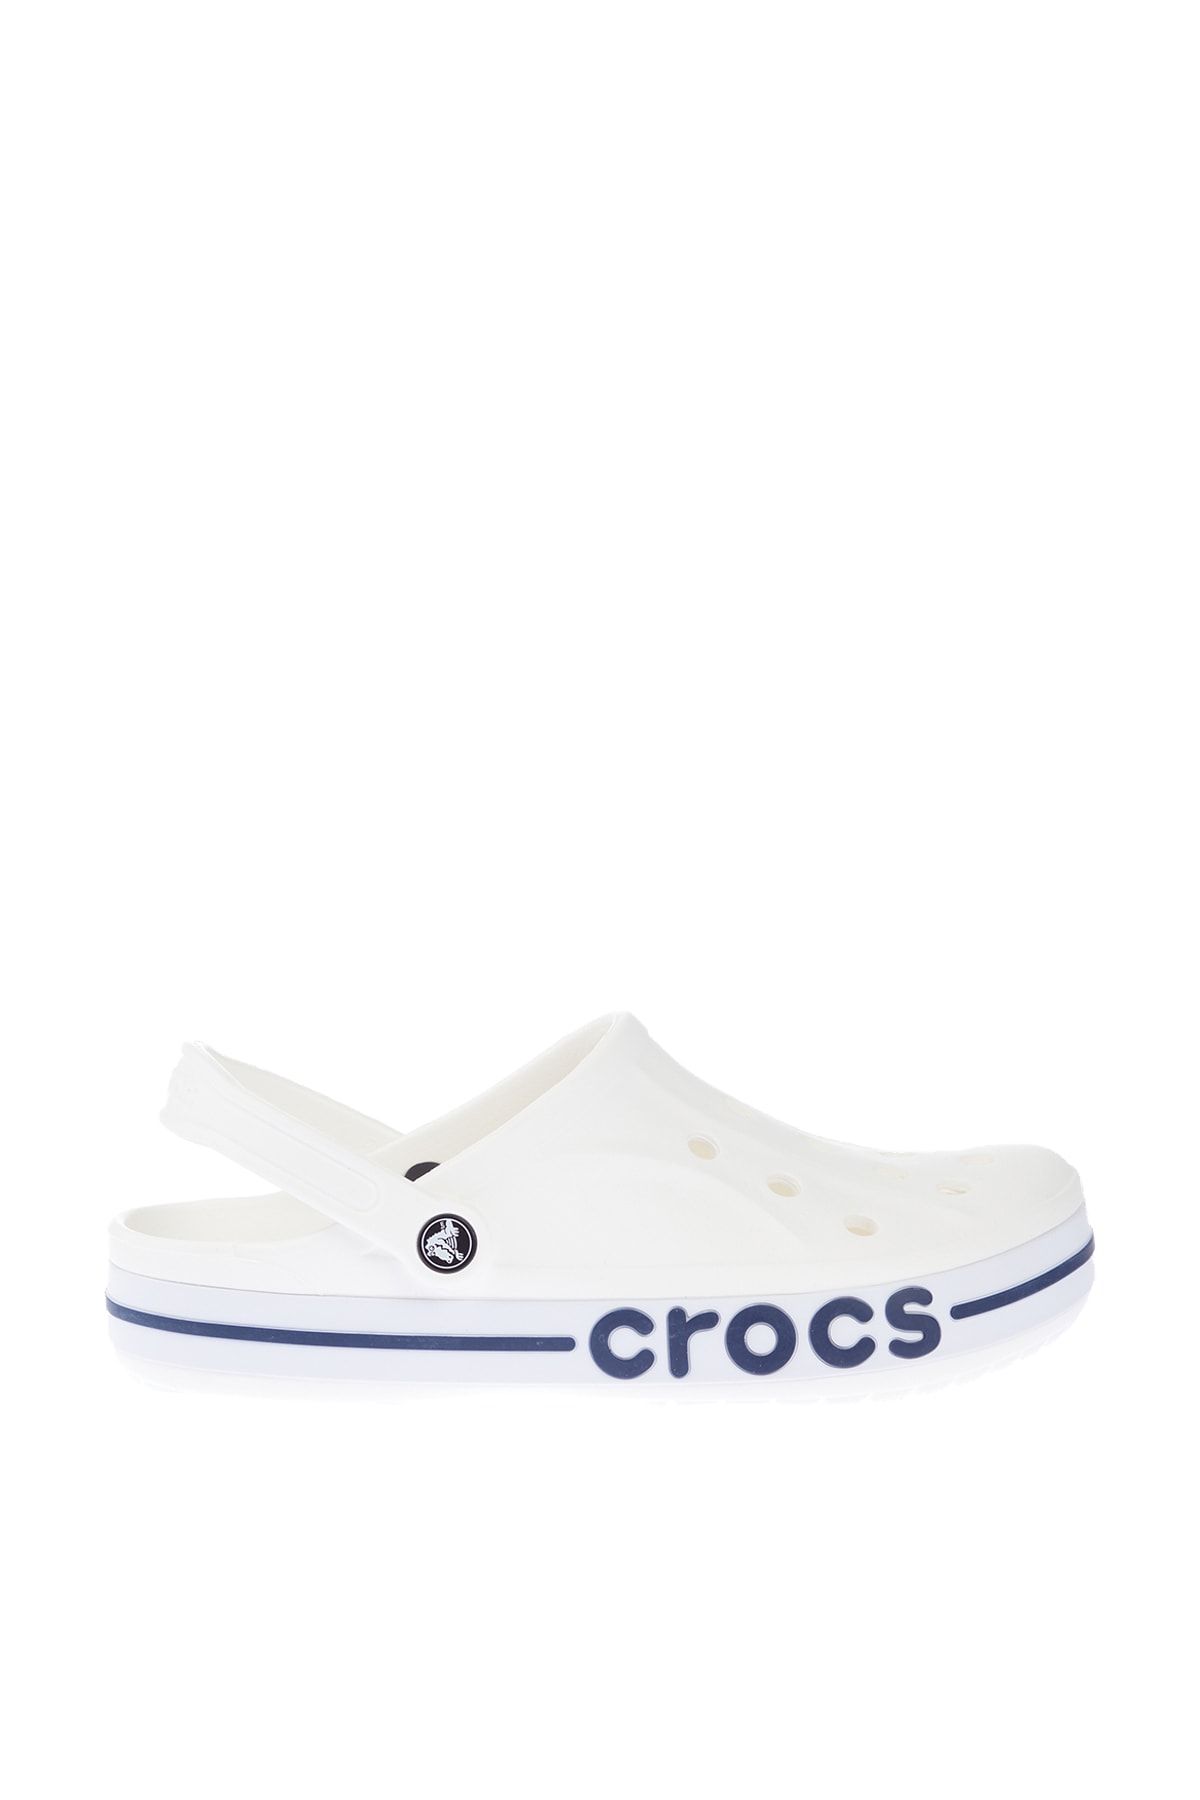 Crocs White/Navy Unisex Terlik Bayaband Clog